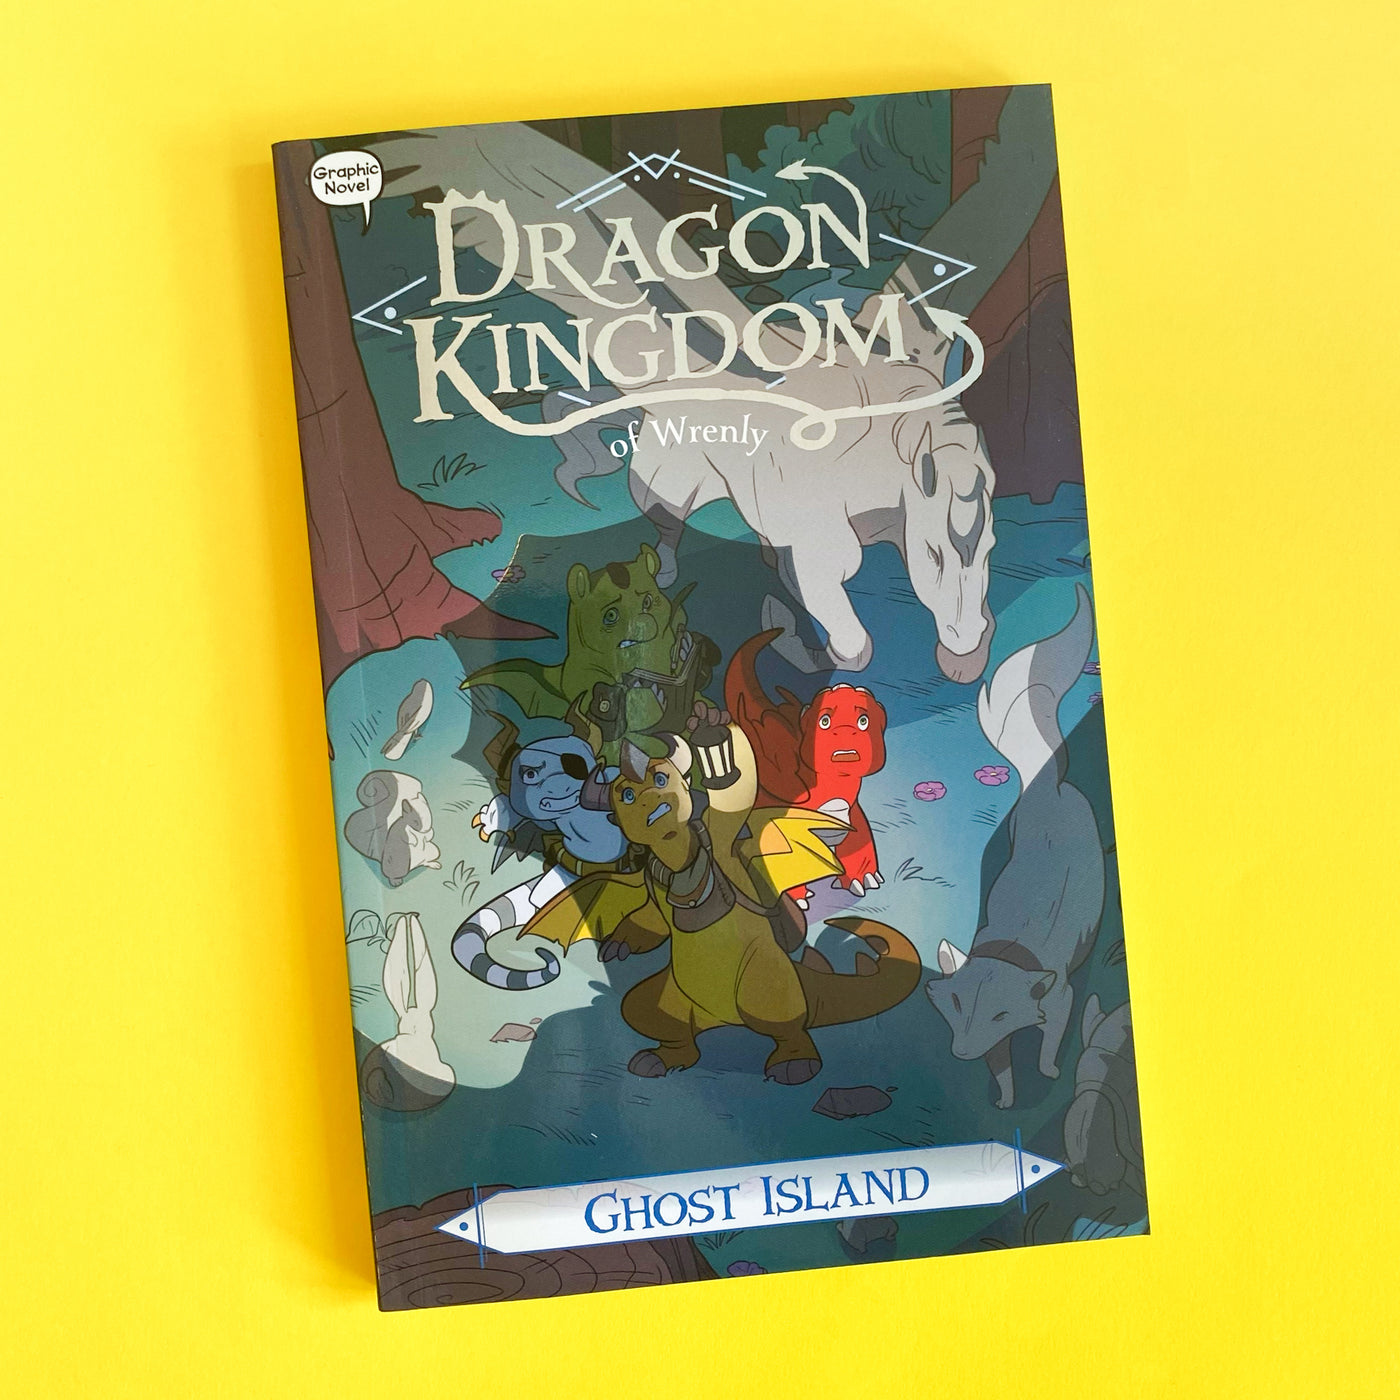 Ghost Island: Dragon Kingdom #4 of Wrenly by Jordan Quinn